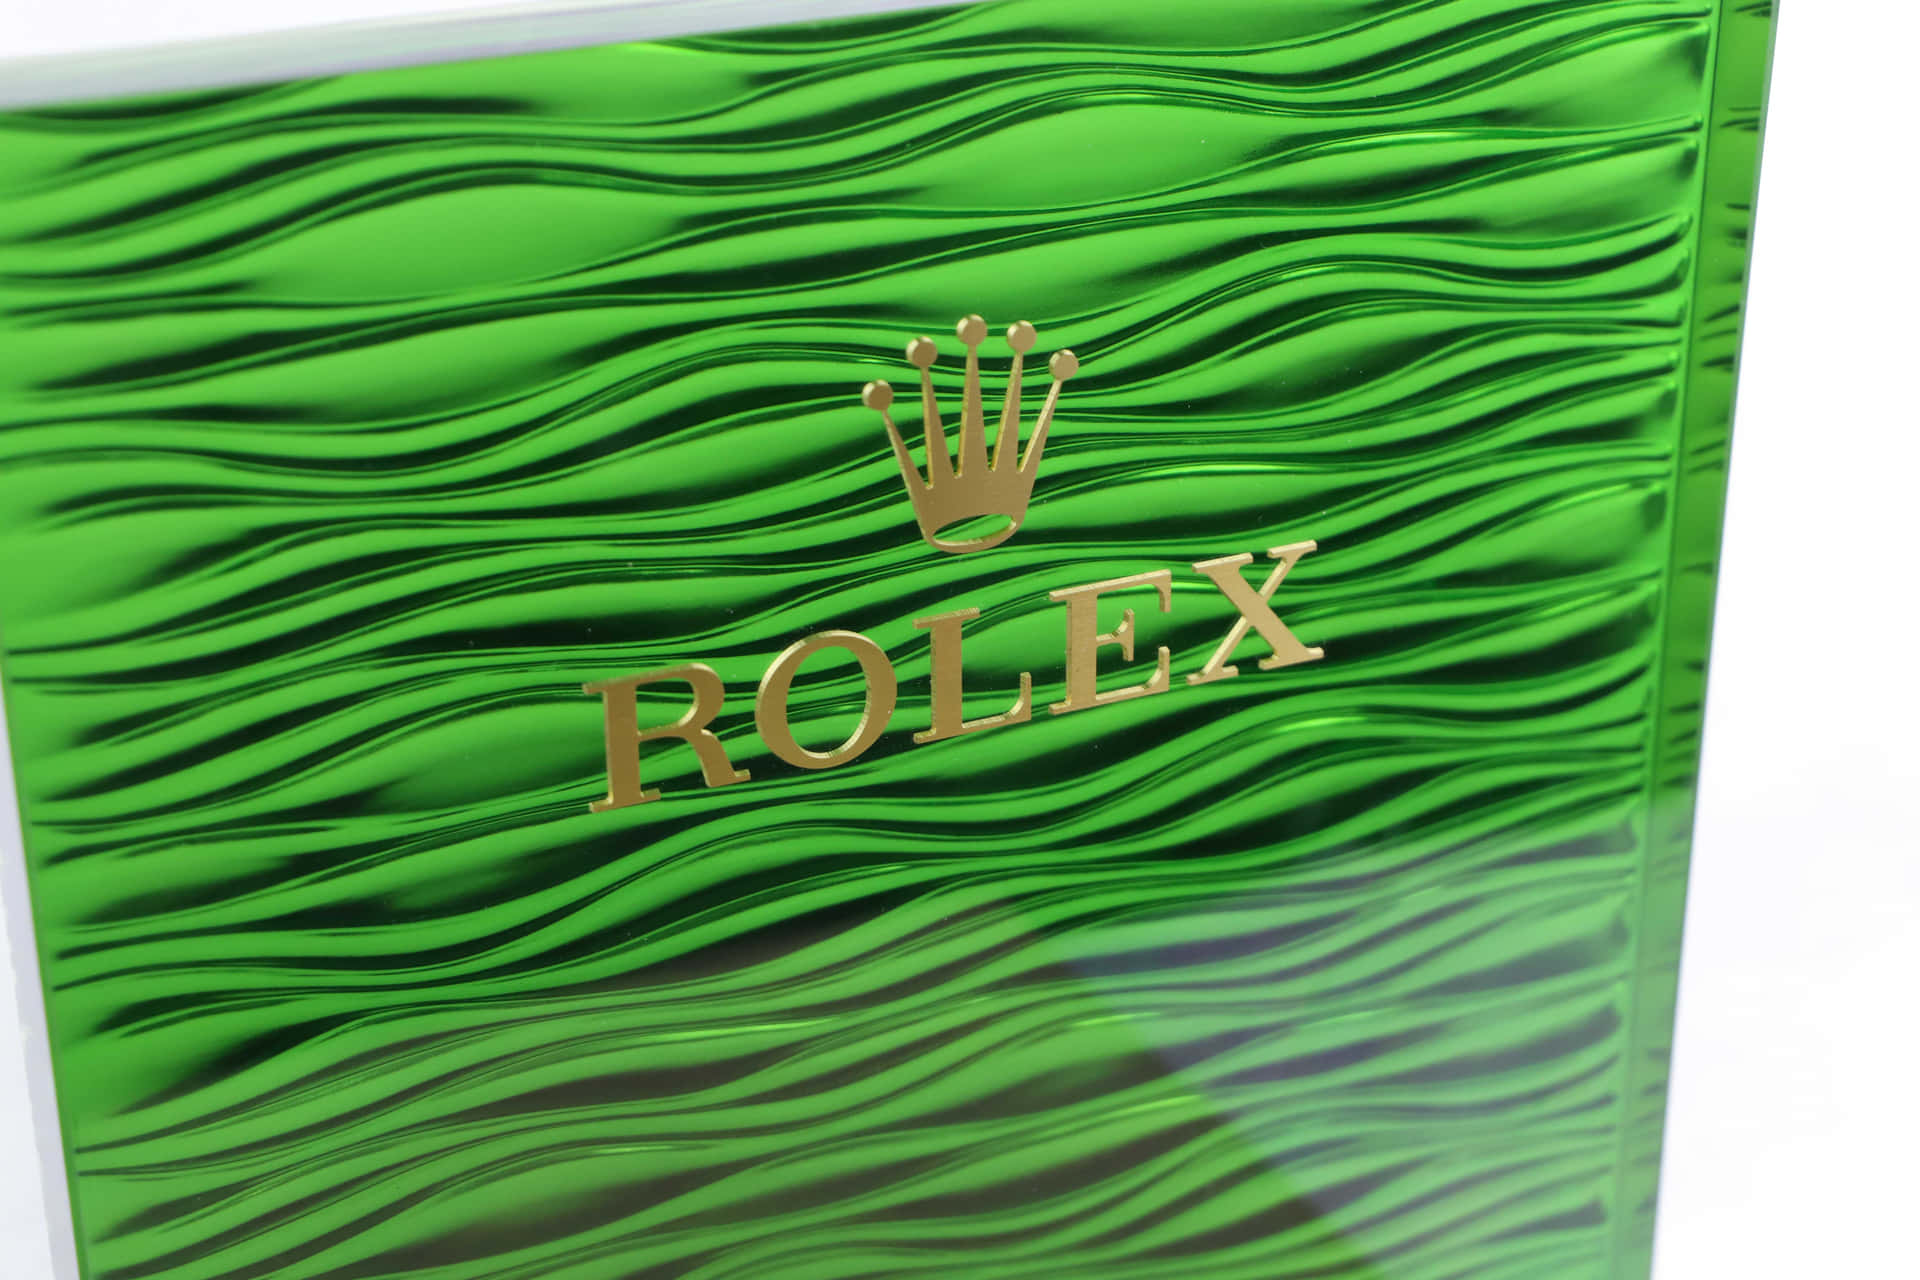 Rolex 6240 X 4160 Background